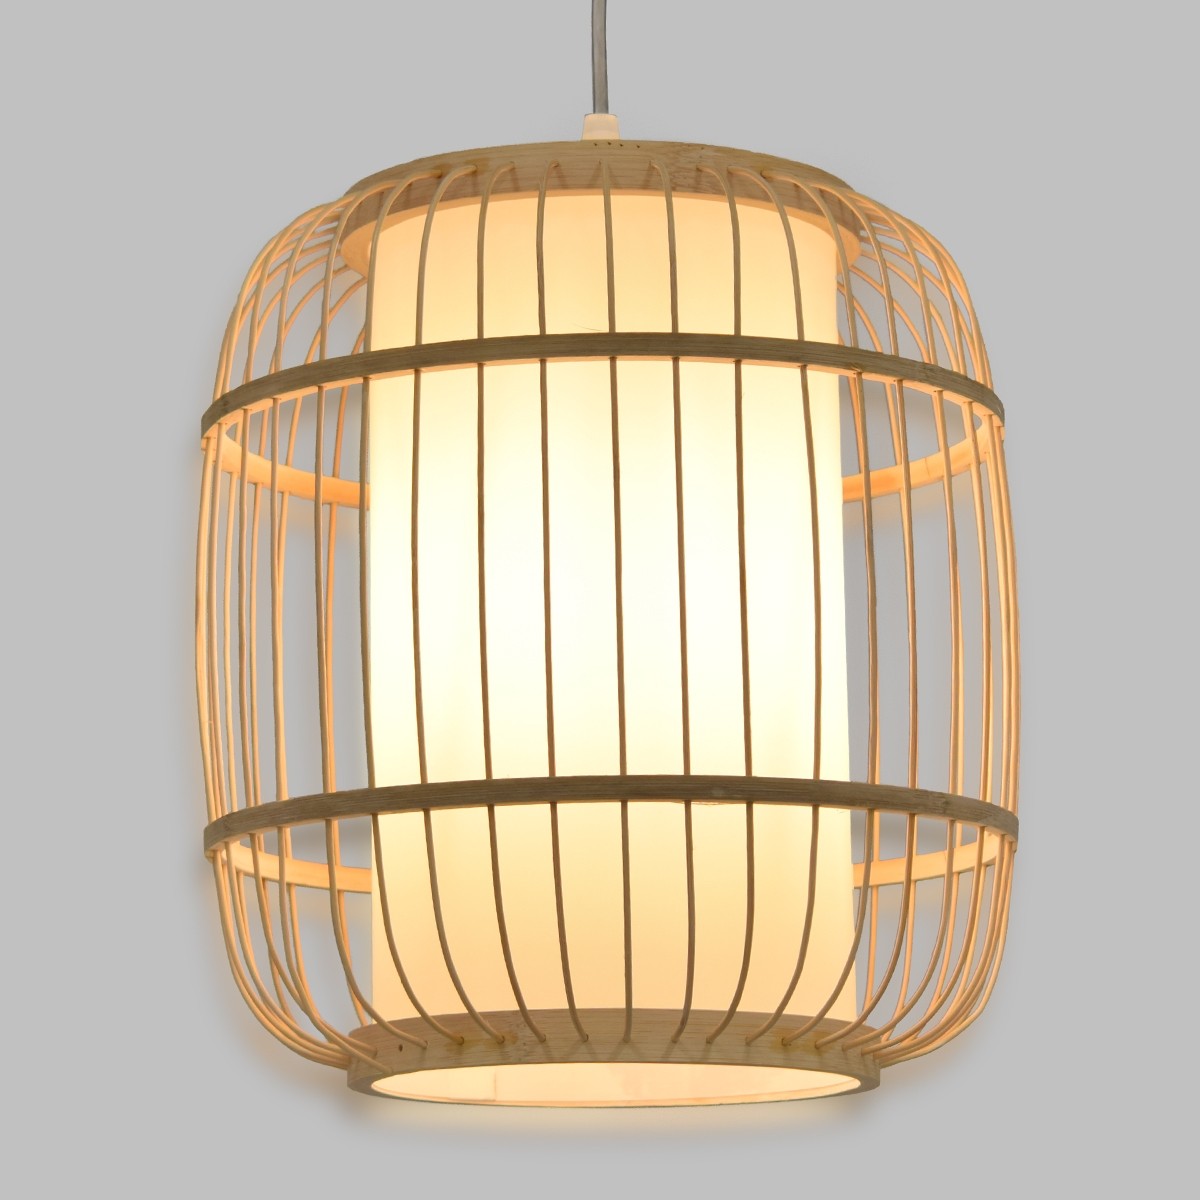 Φωτιστικό Οροφής Κρεμαστό DE PARIS Vintage Μπεζ Ξύλινο Bamboo Φ26 x Y32cm 01633